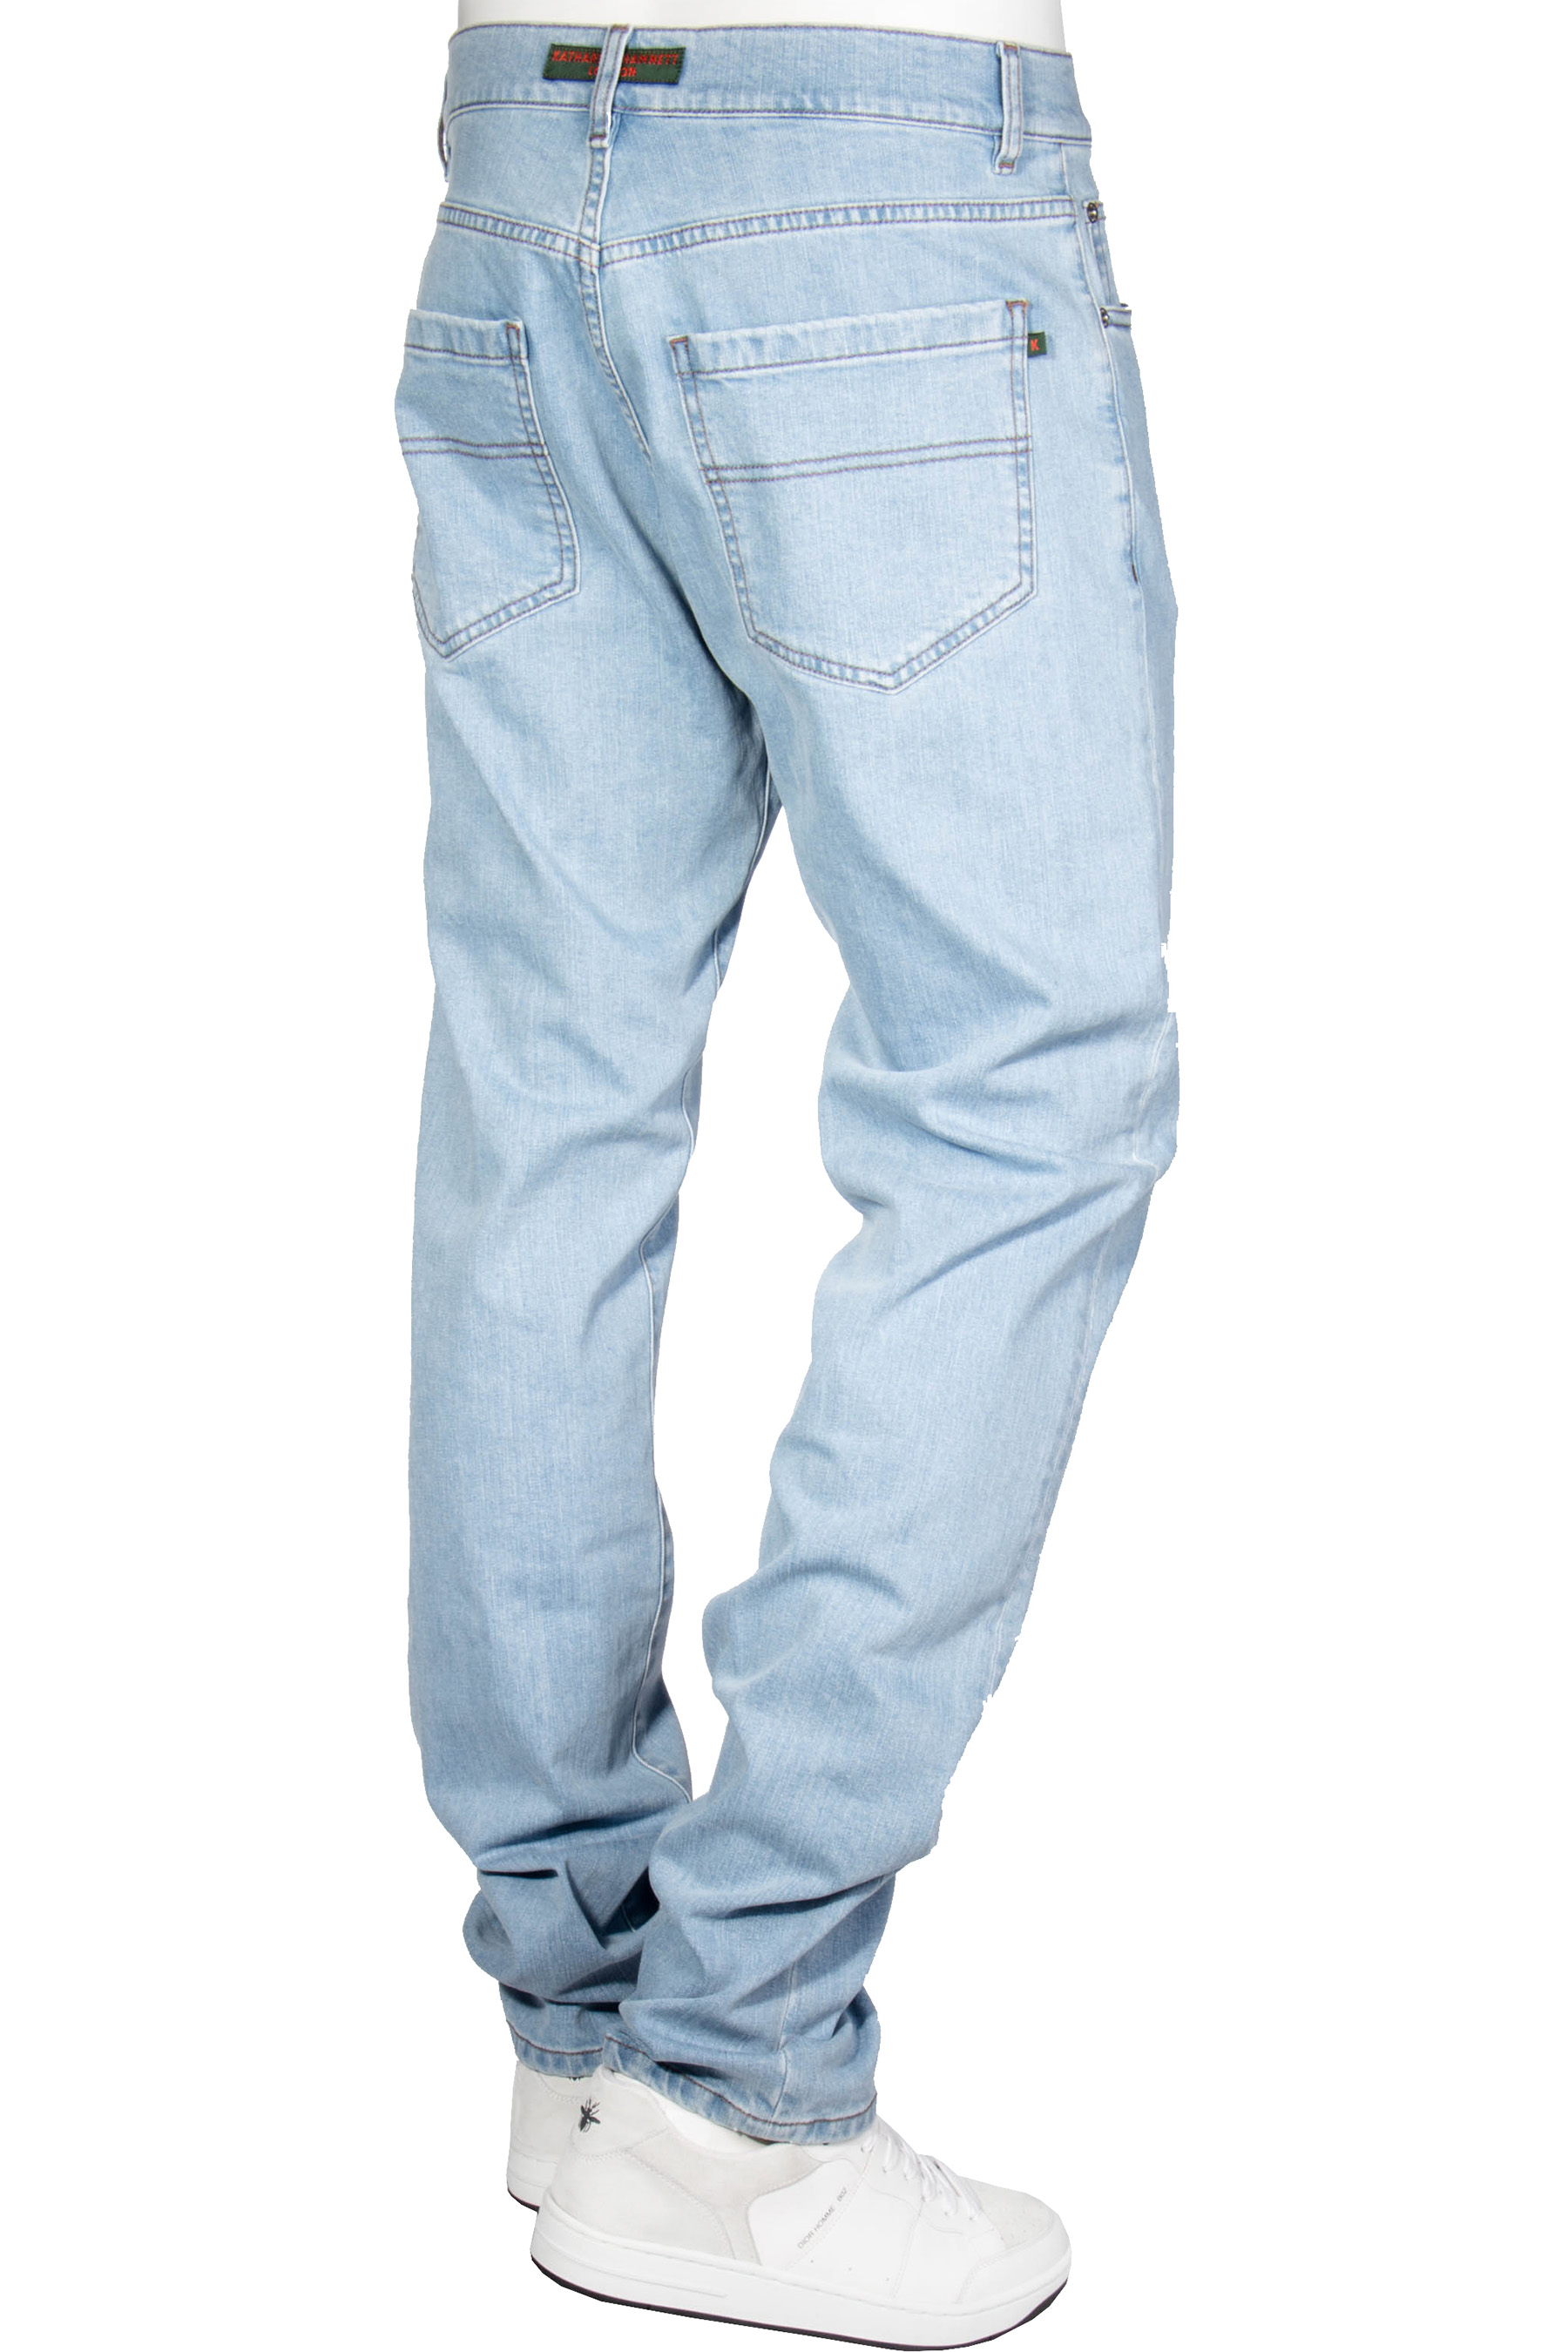 KATHARINE HAMNETT Jeans Straight Fit Mick | Jeans | Clothing | Men ...